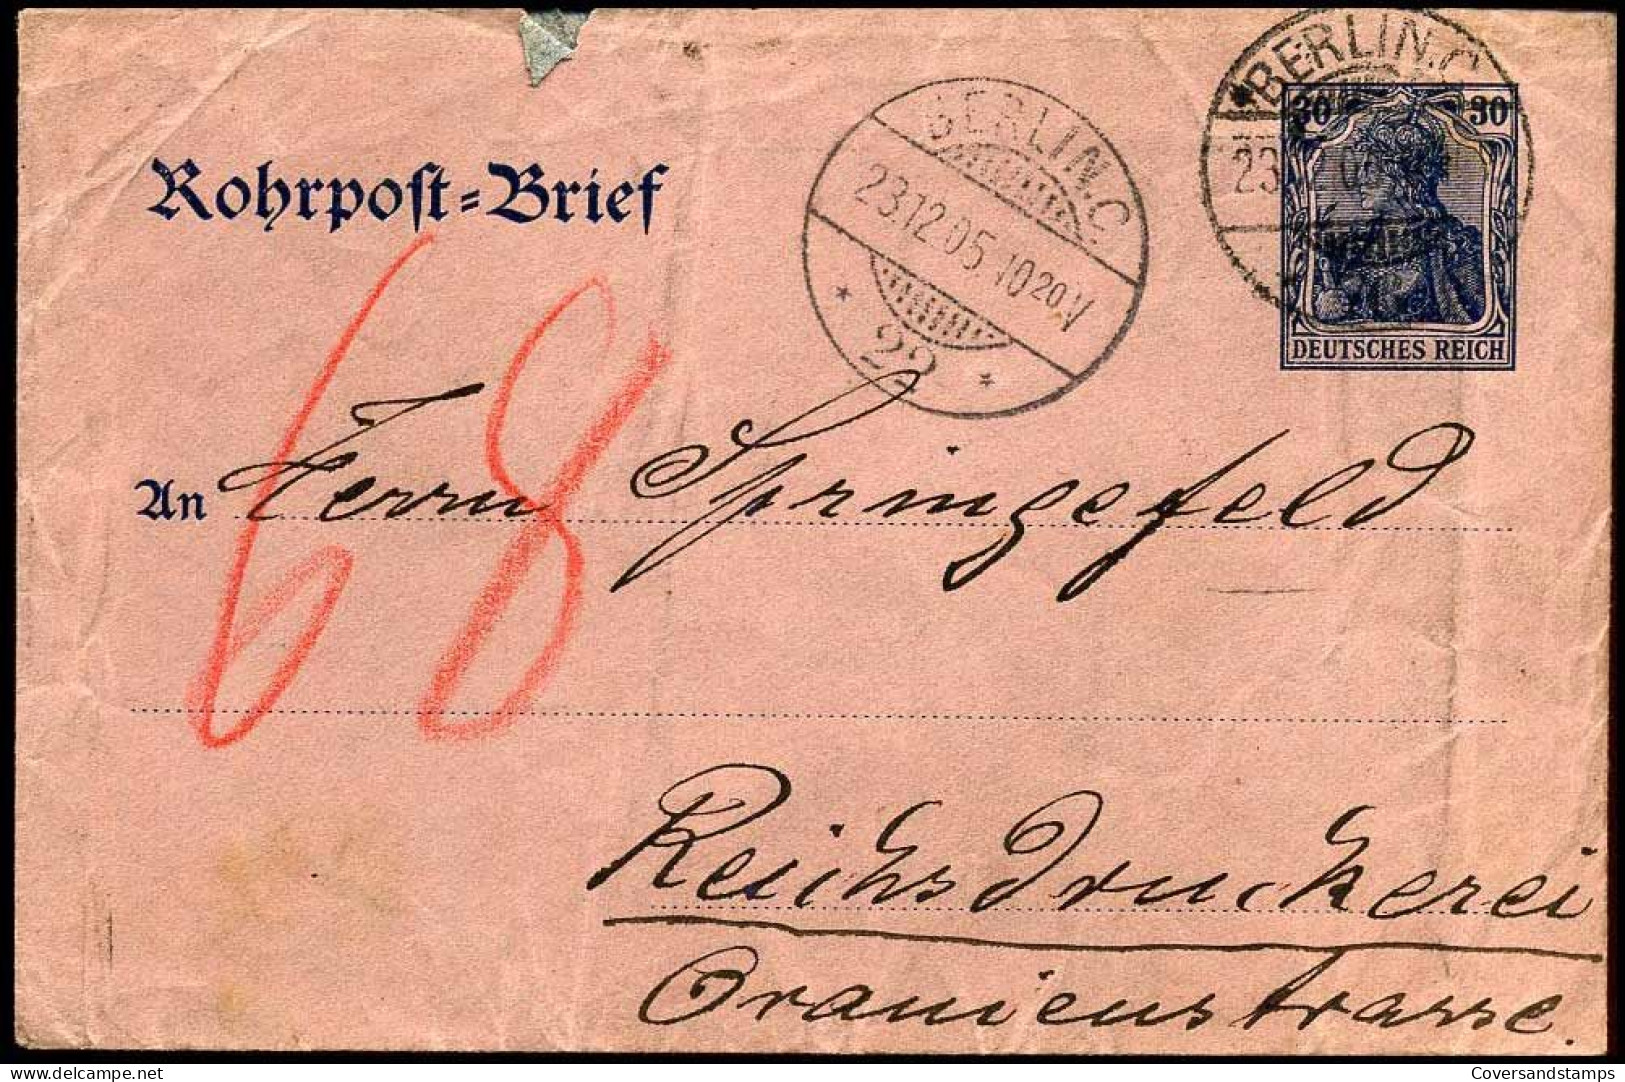 Rohrpost Brief - Berlin - Reichsdruckerei - Covers